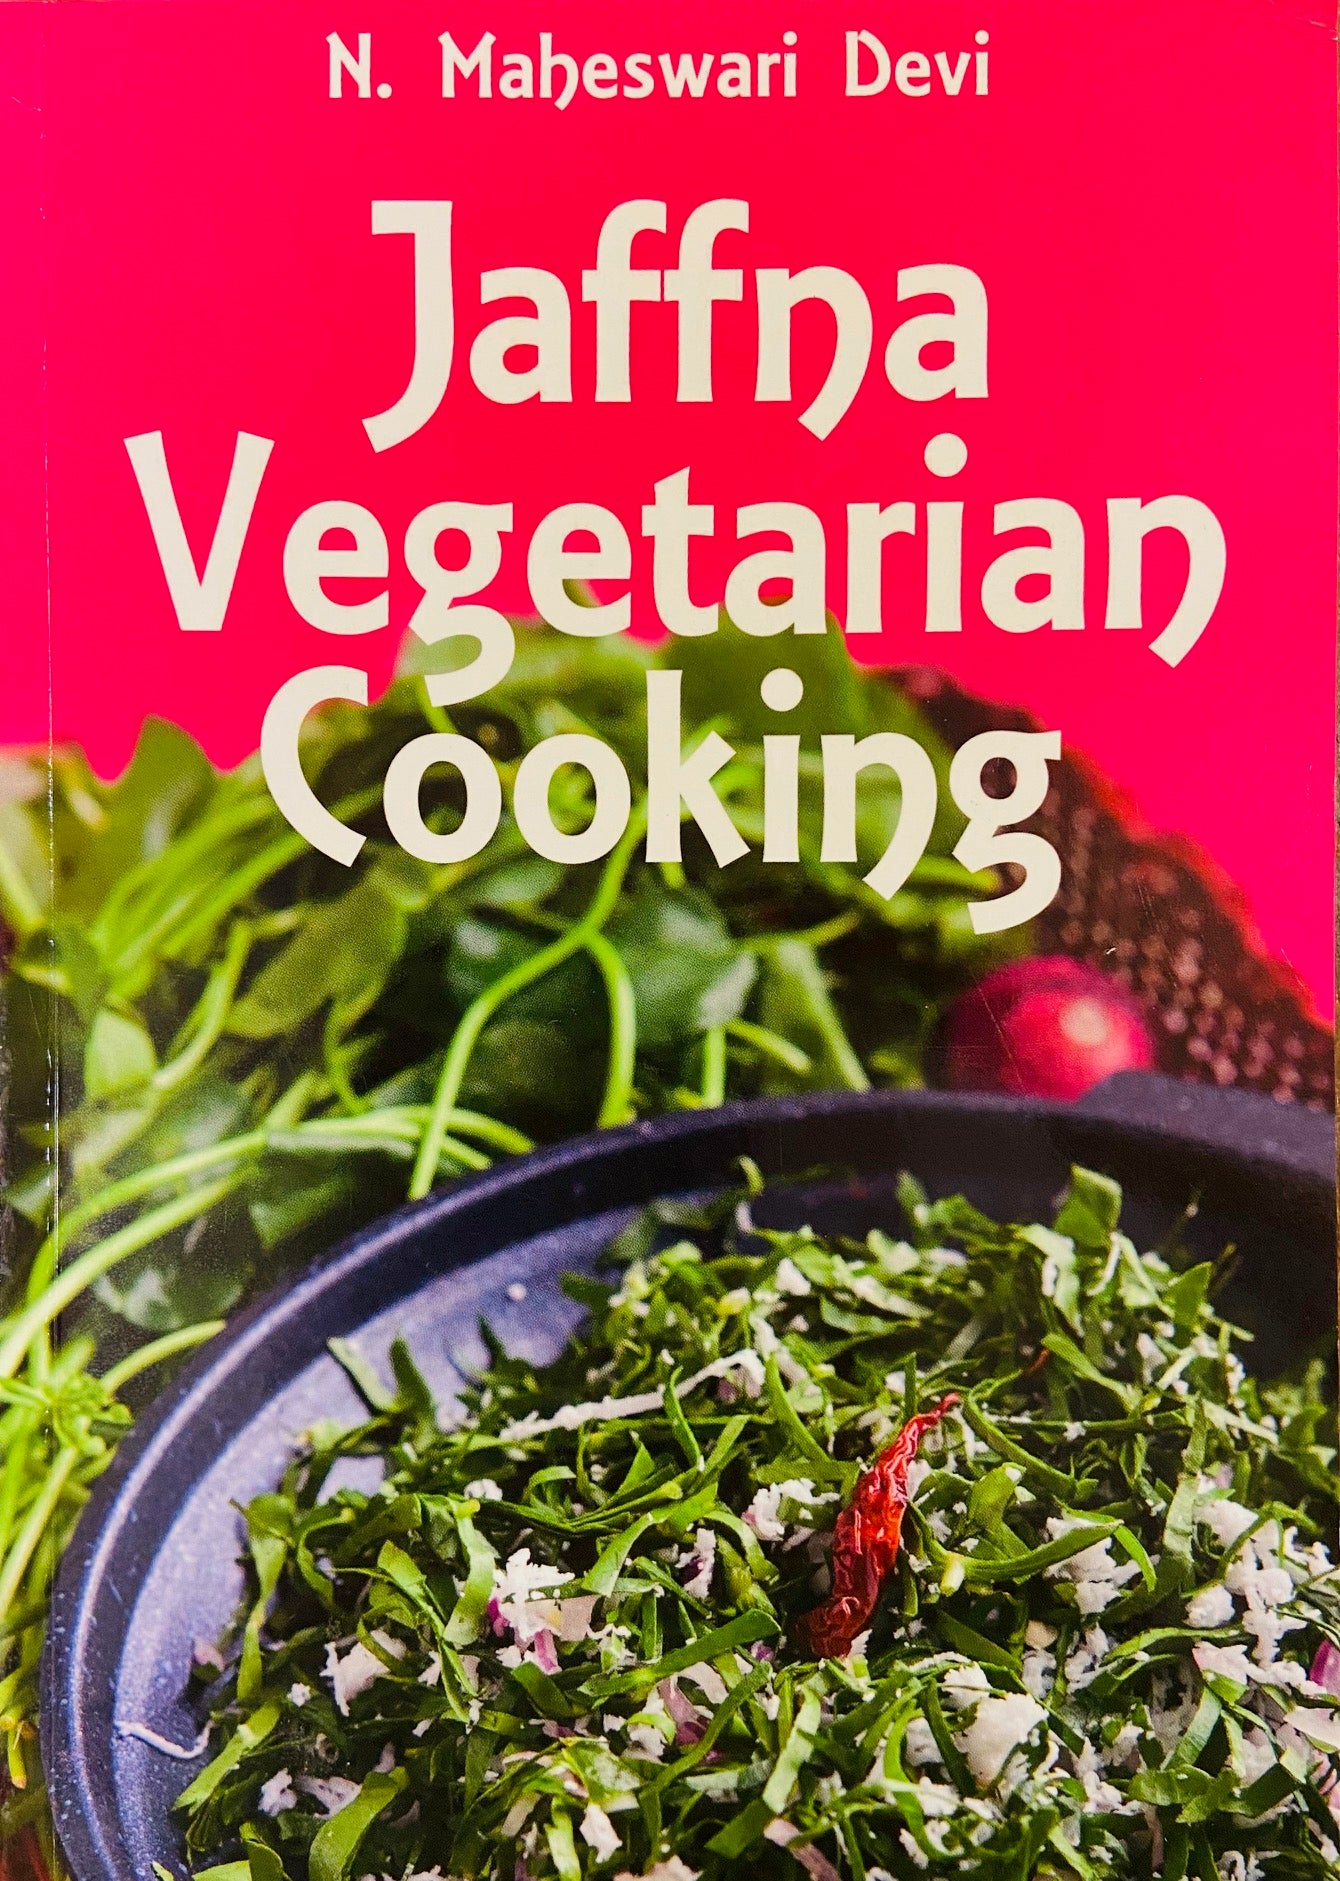 Jaffna Vegetarian Cooking by N Maheshwari Devi